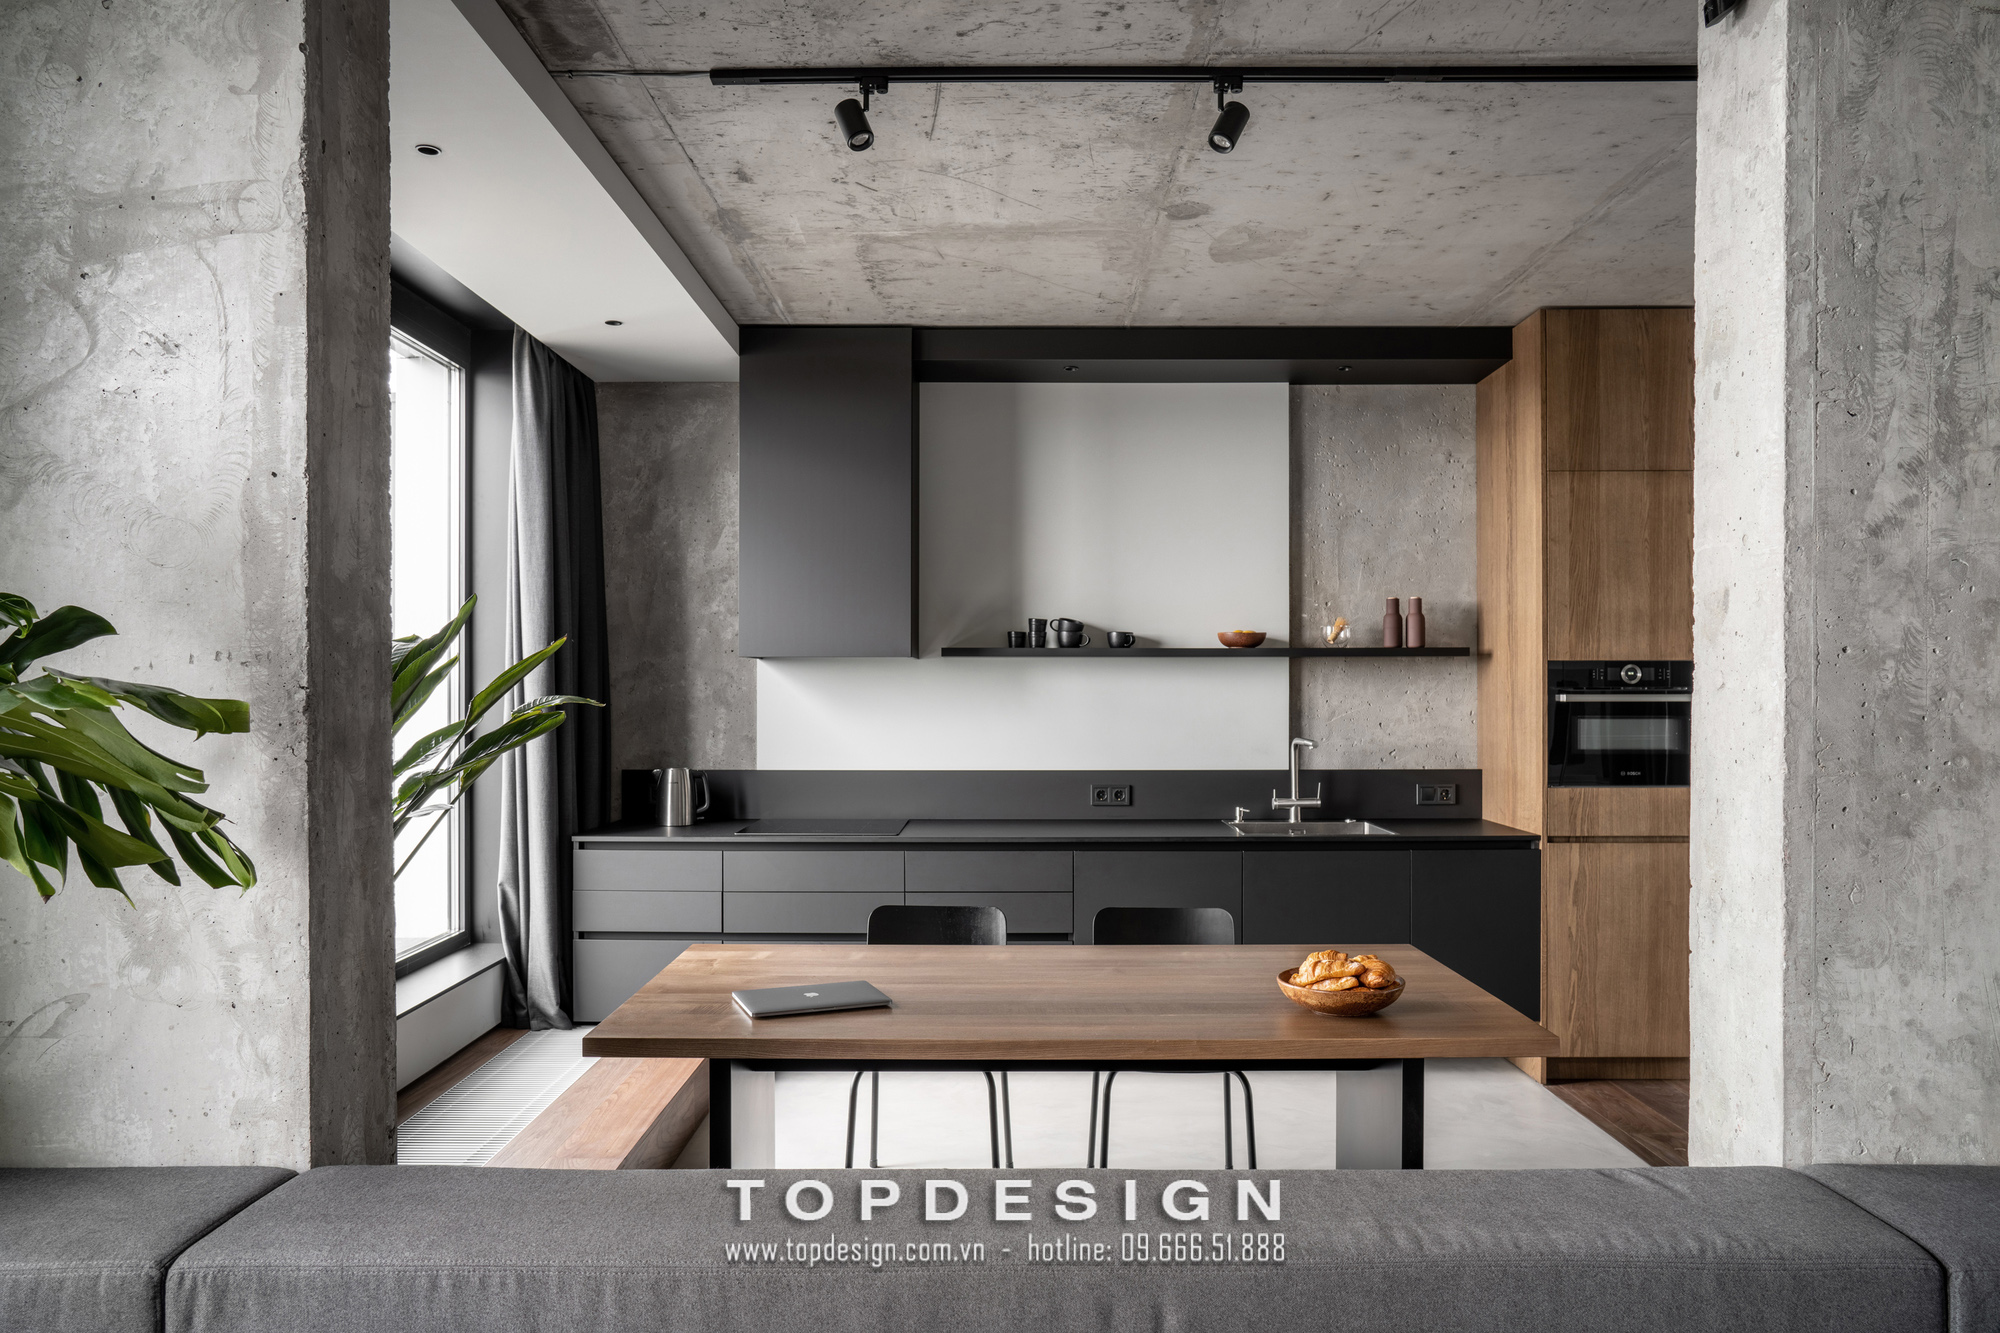 1.Thiết kế thi công nội thất căn hộ chung cư ấn tượng, phong thái_TOPDESIGN